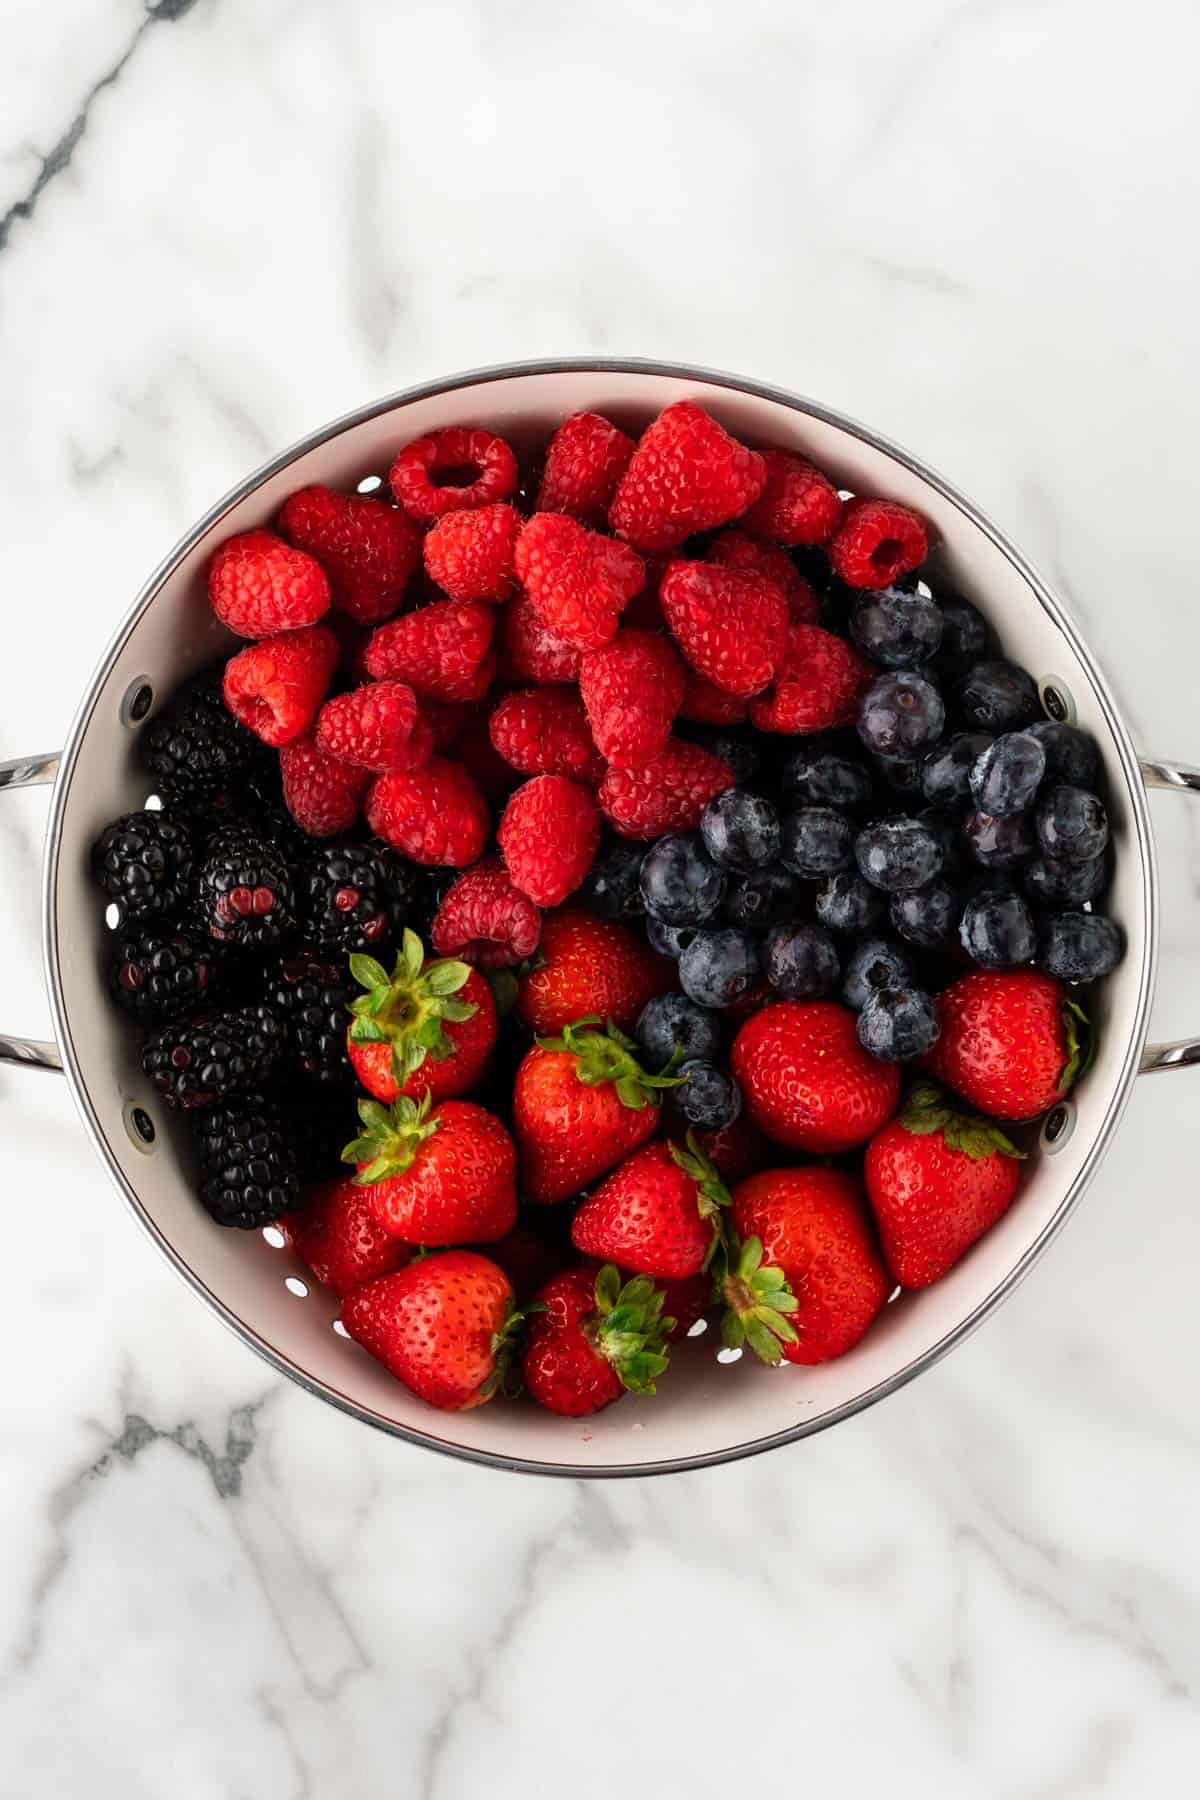 raspberries, blackberries, blueberries, and strawberries in a strainer